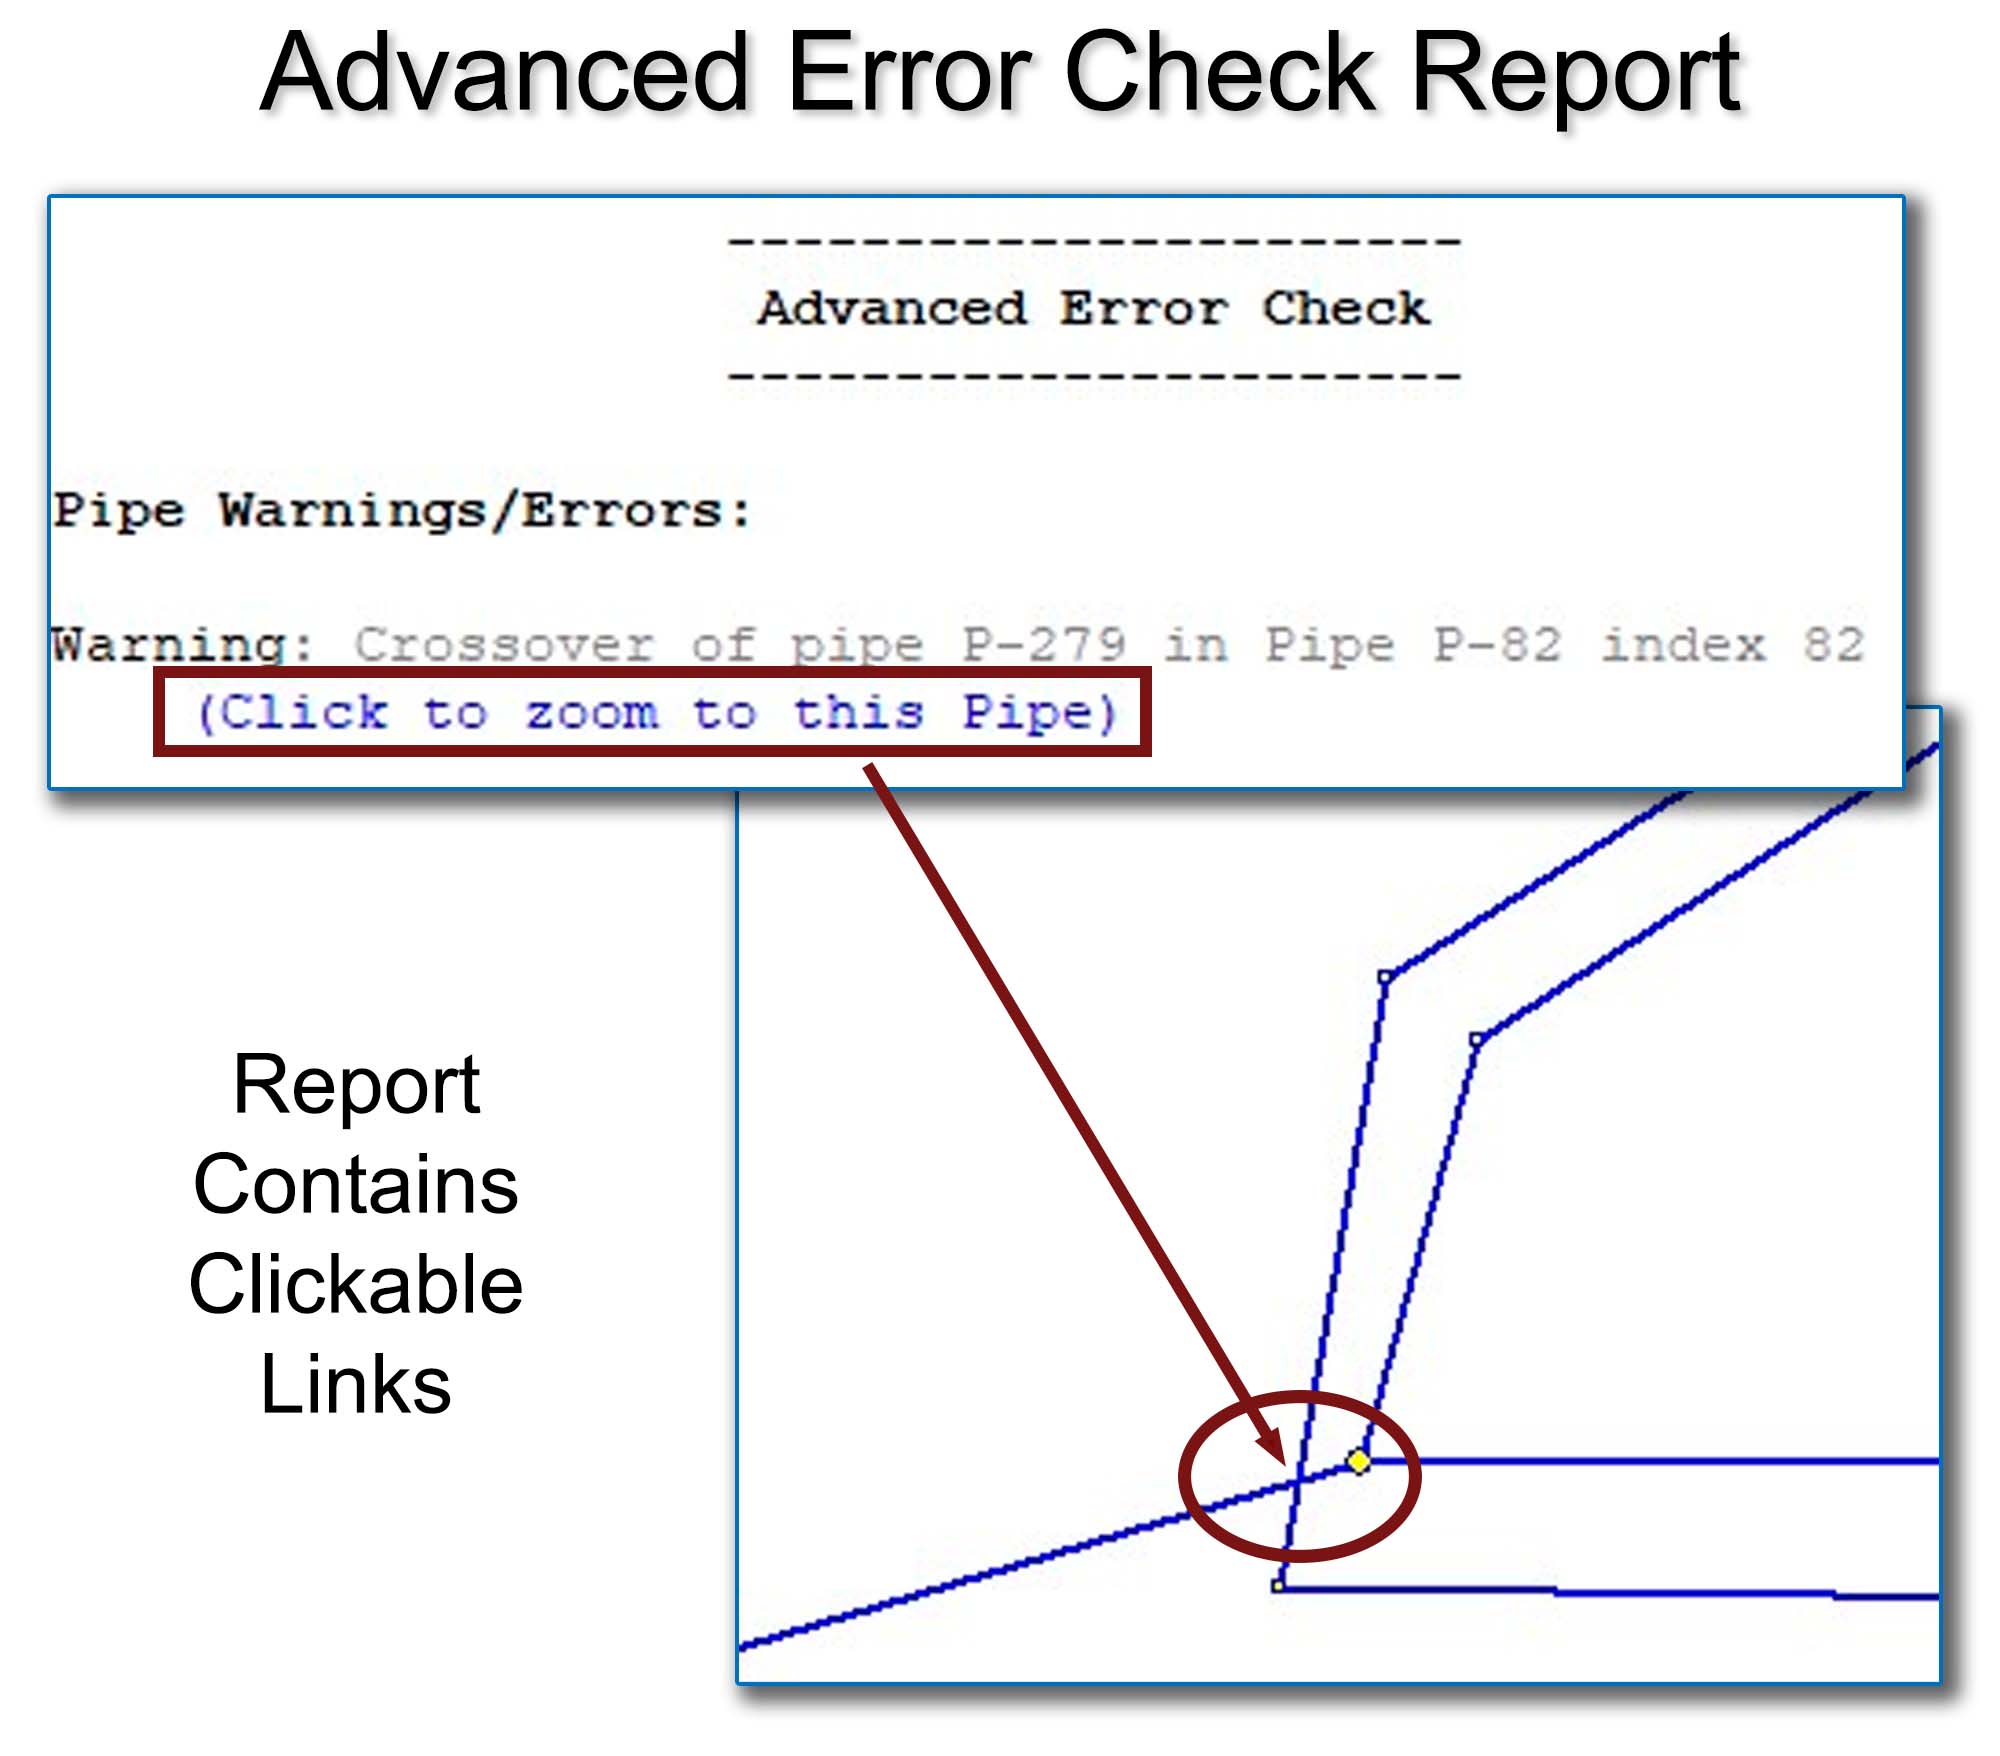  Advanced Error Check Report 